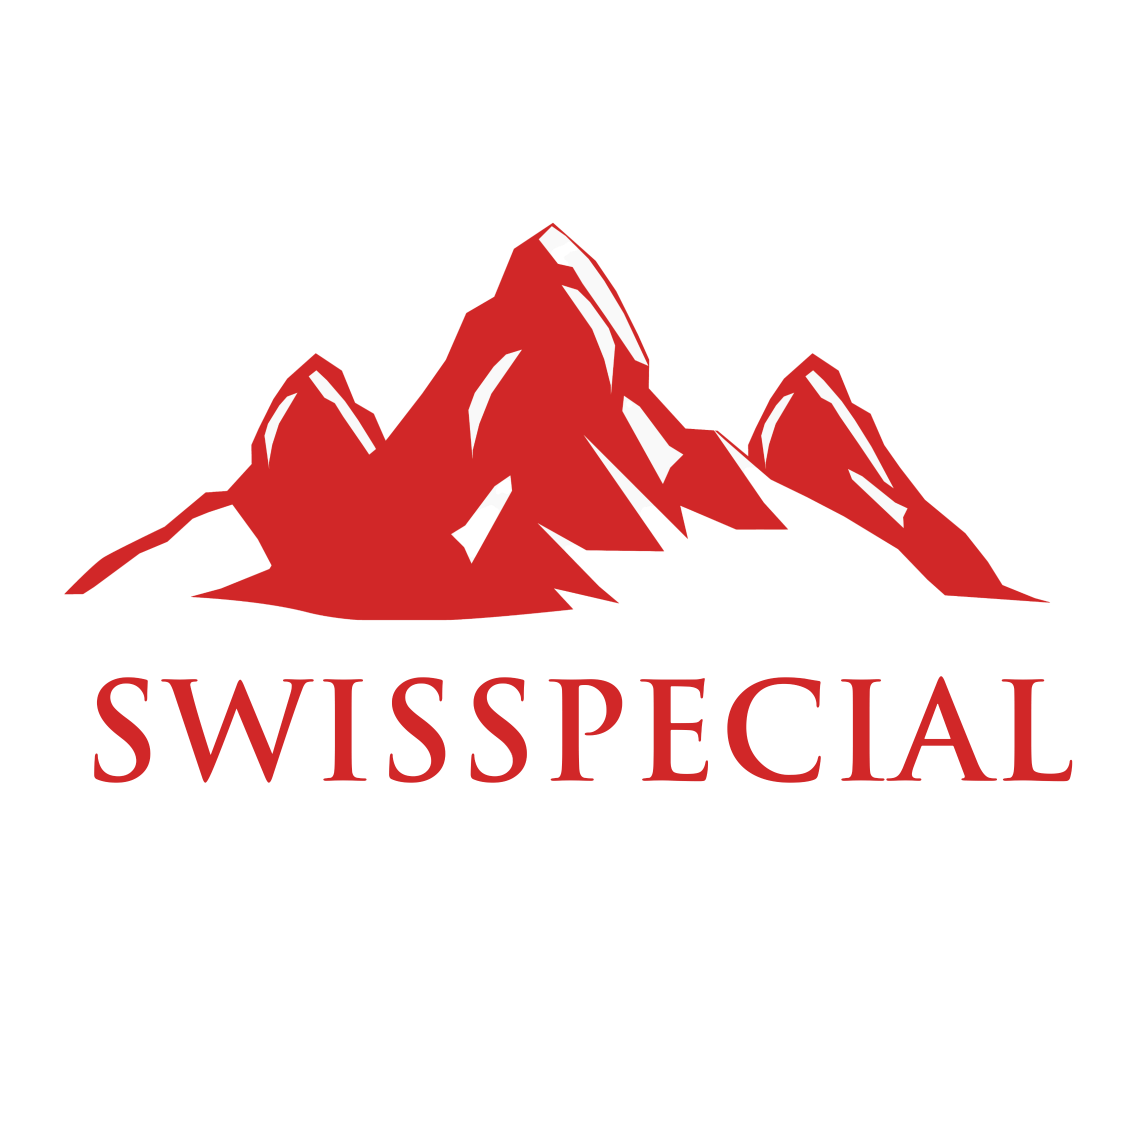 Swisspecial - Private Guiding in Switzerland - Favicon